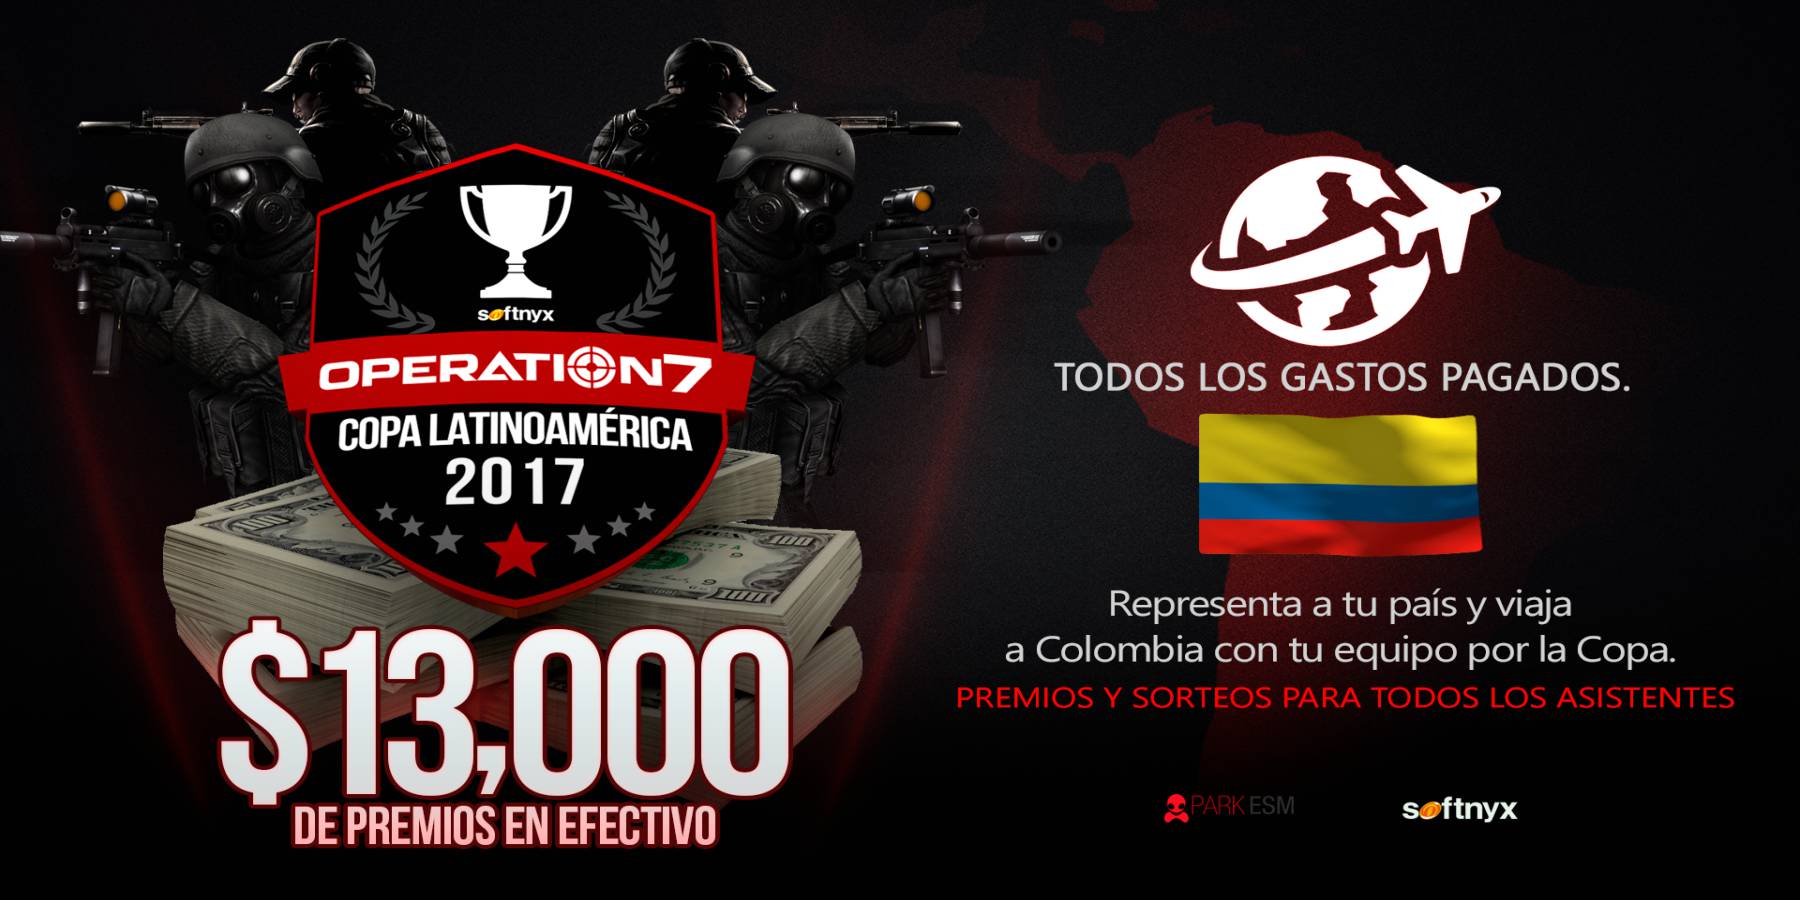 Softnyx anuncia la primera Copa Latinoamericana Operation7